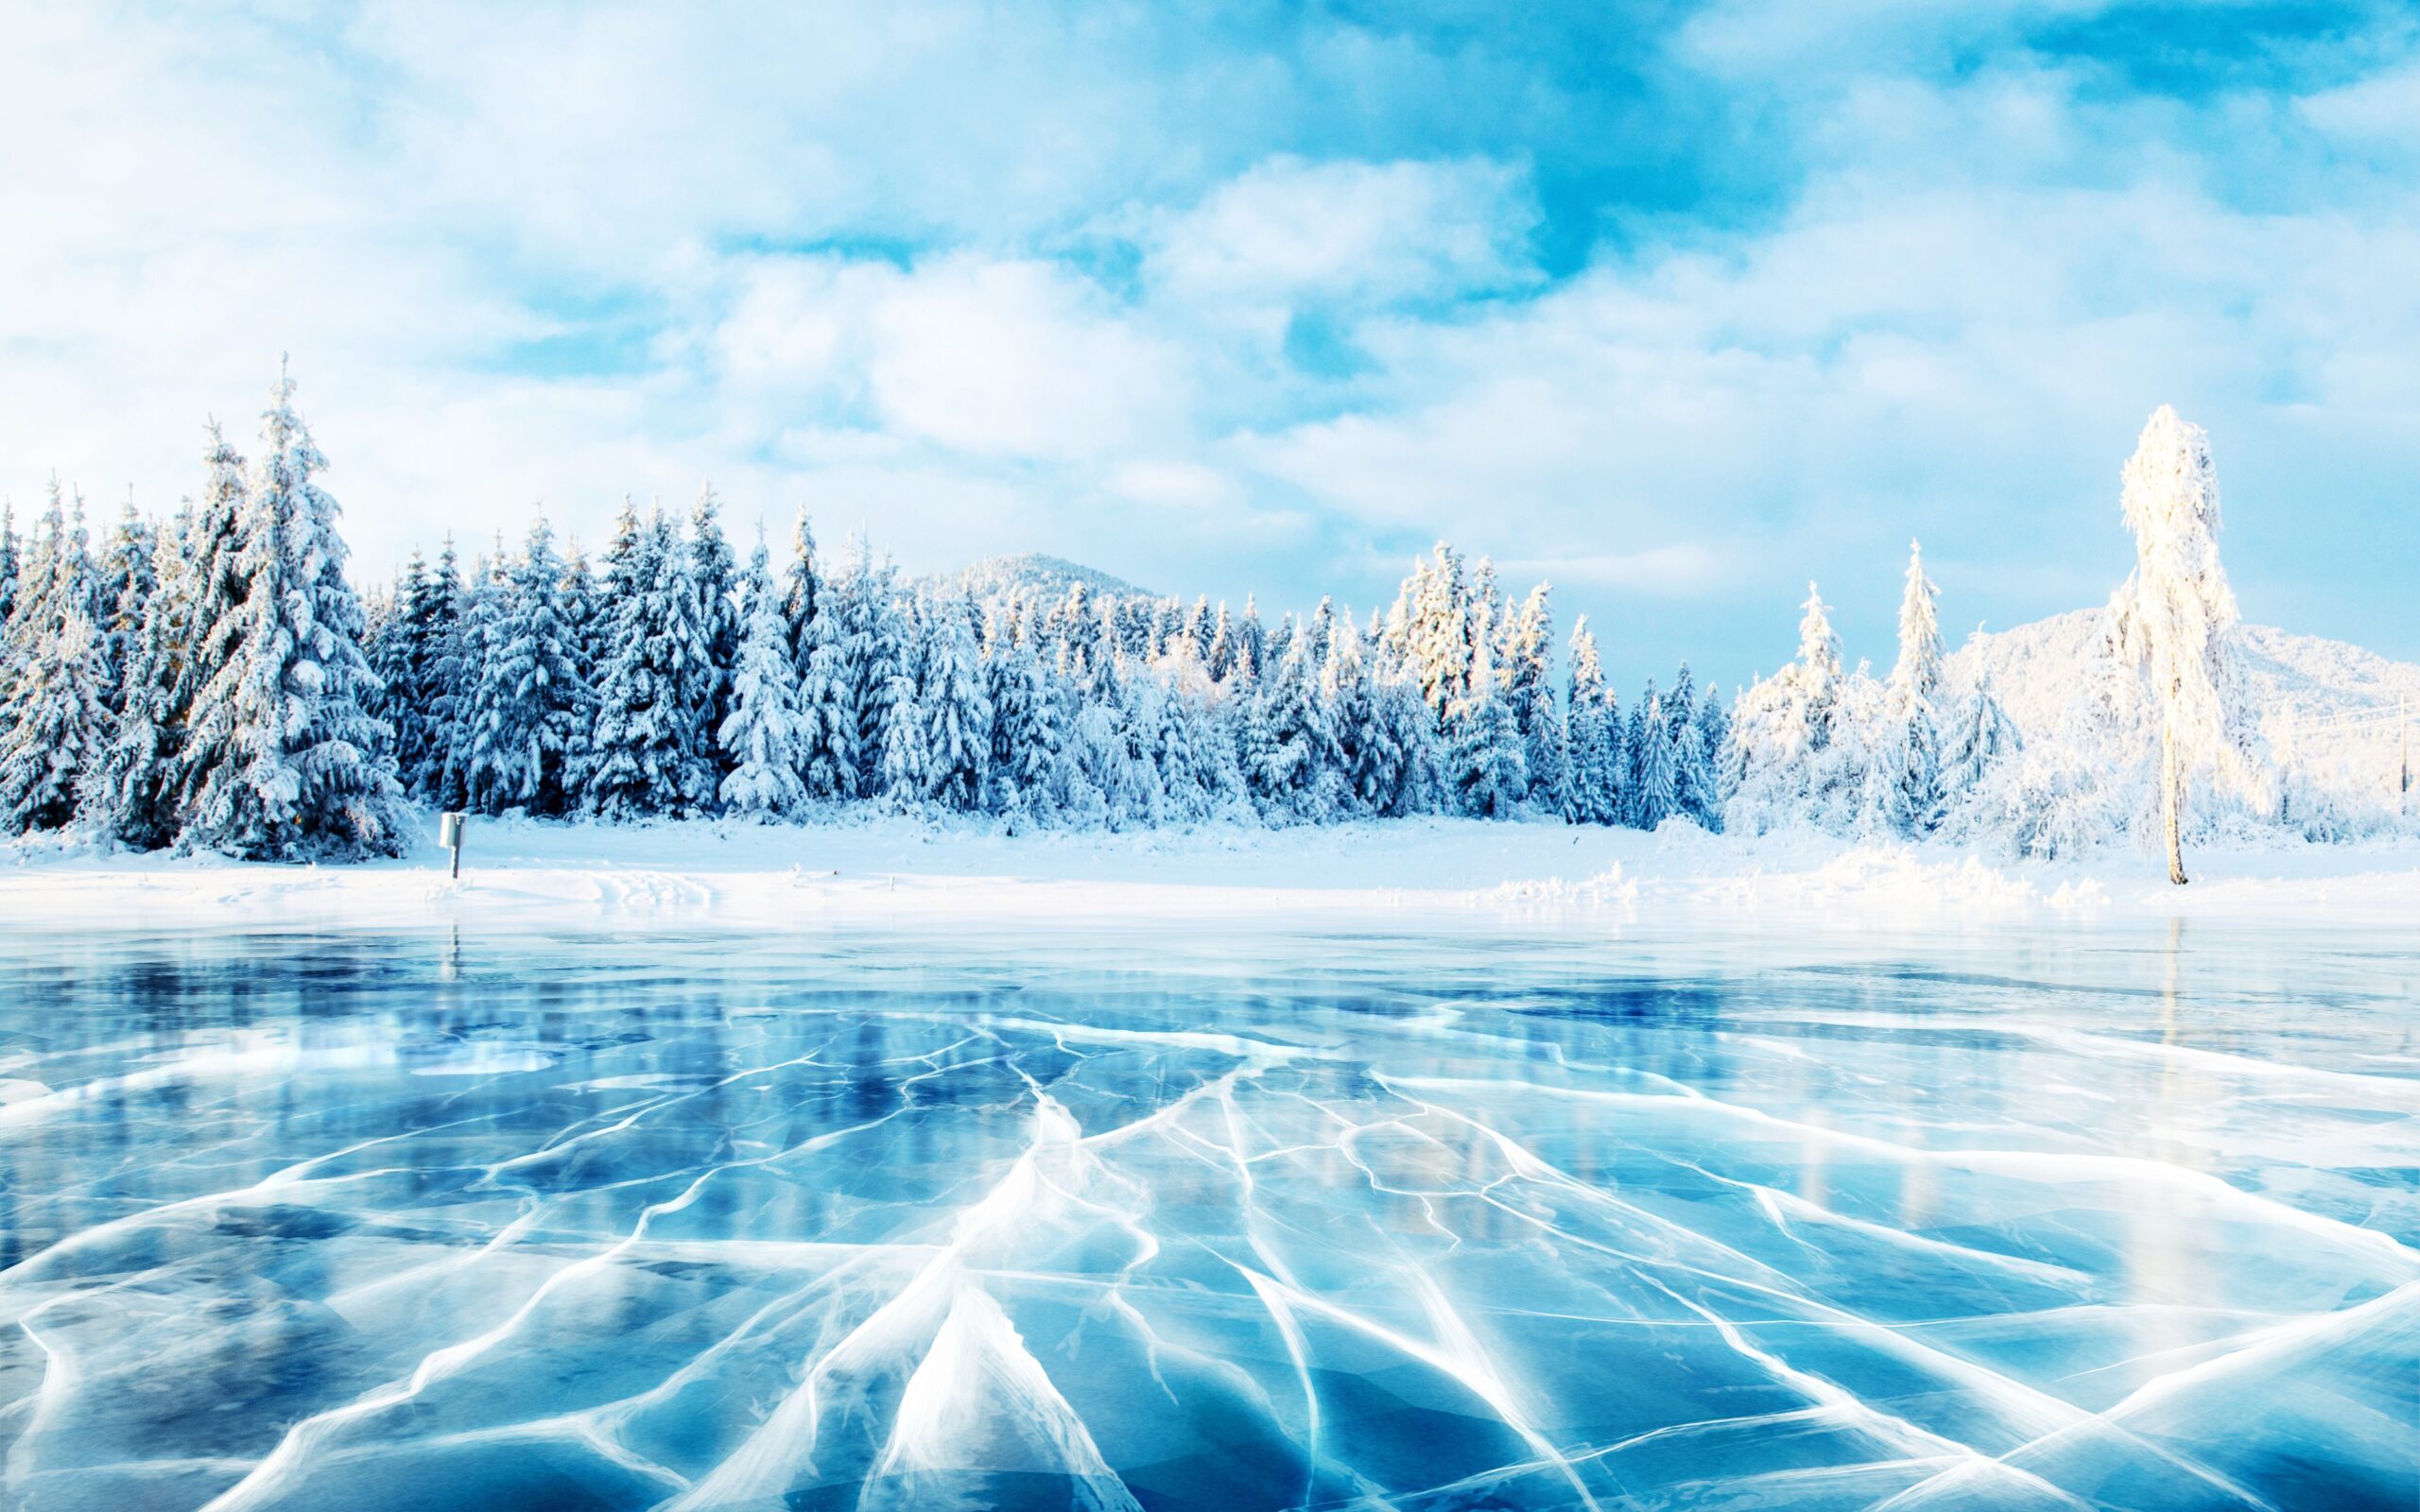 <img src="frozen.jpg" alt="frozen lake in carpathian ukraine"/>